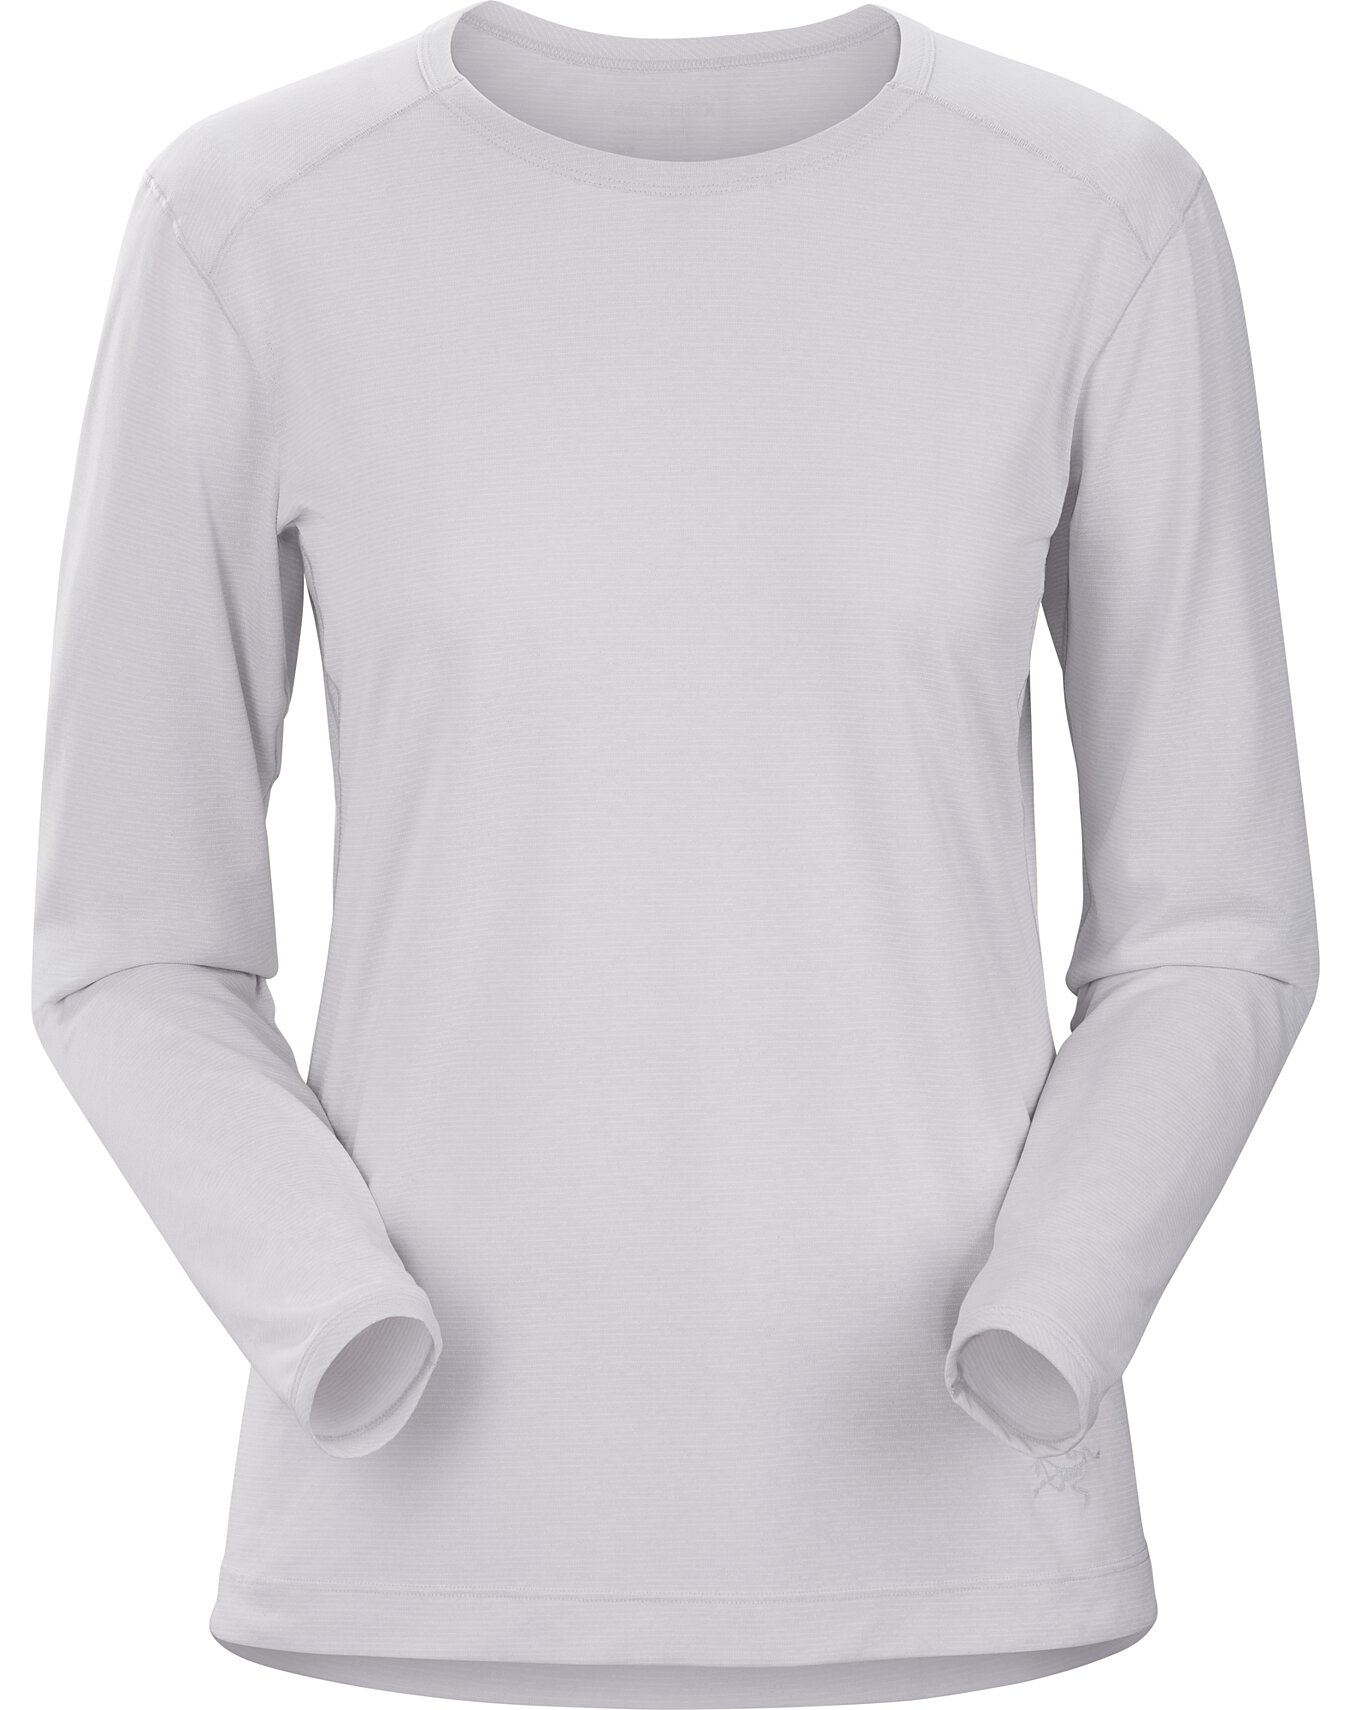 Arcteryx Womens Tolu Top Ls Long-Sleeved t-Shirt